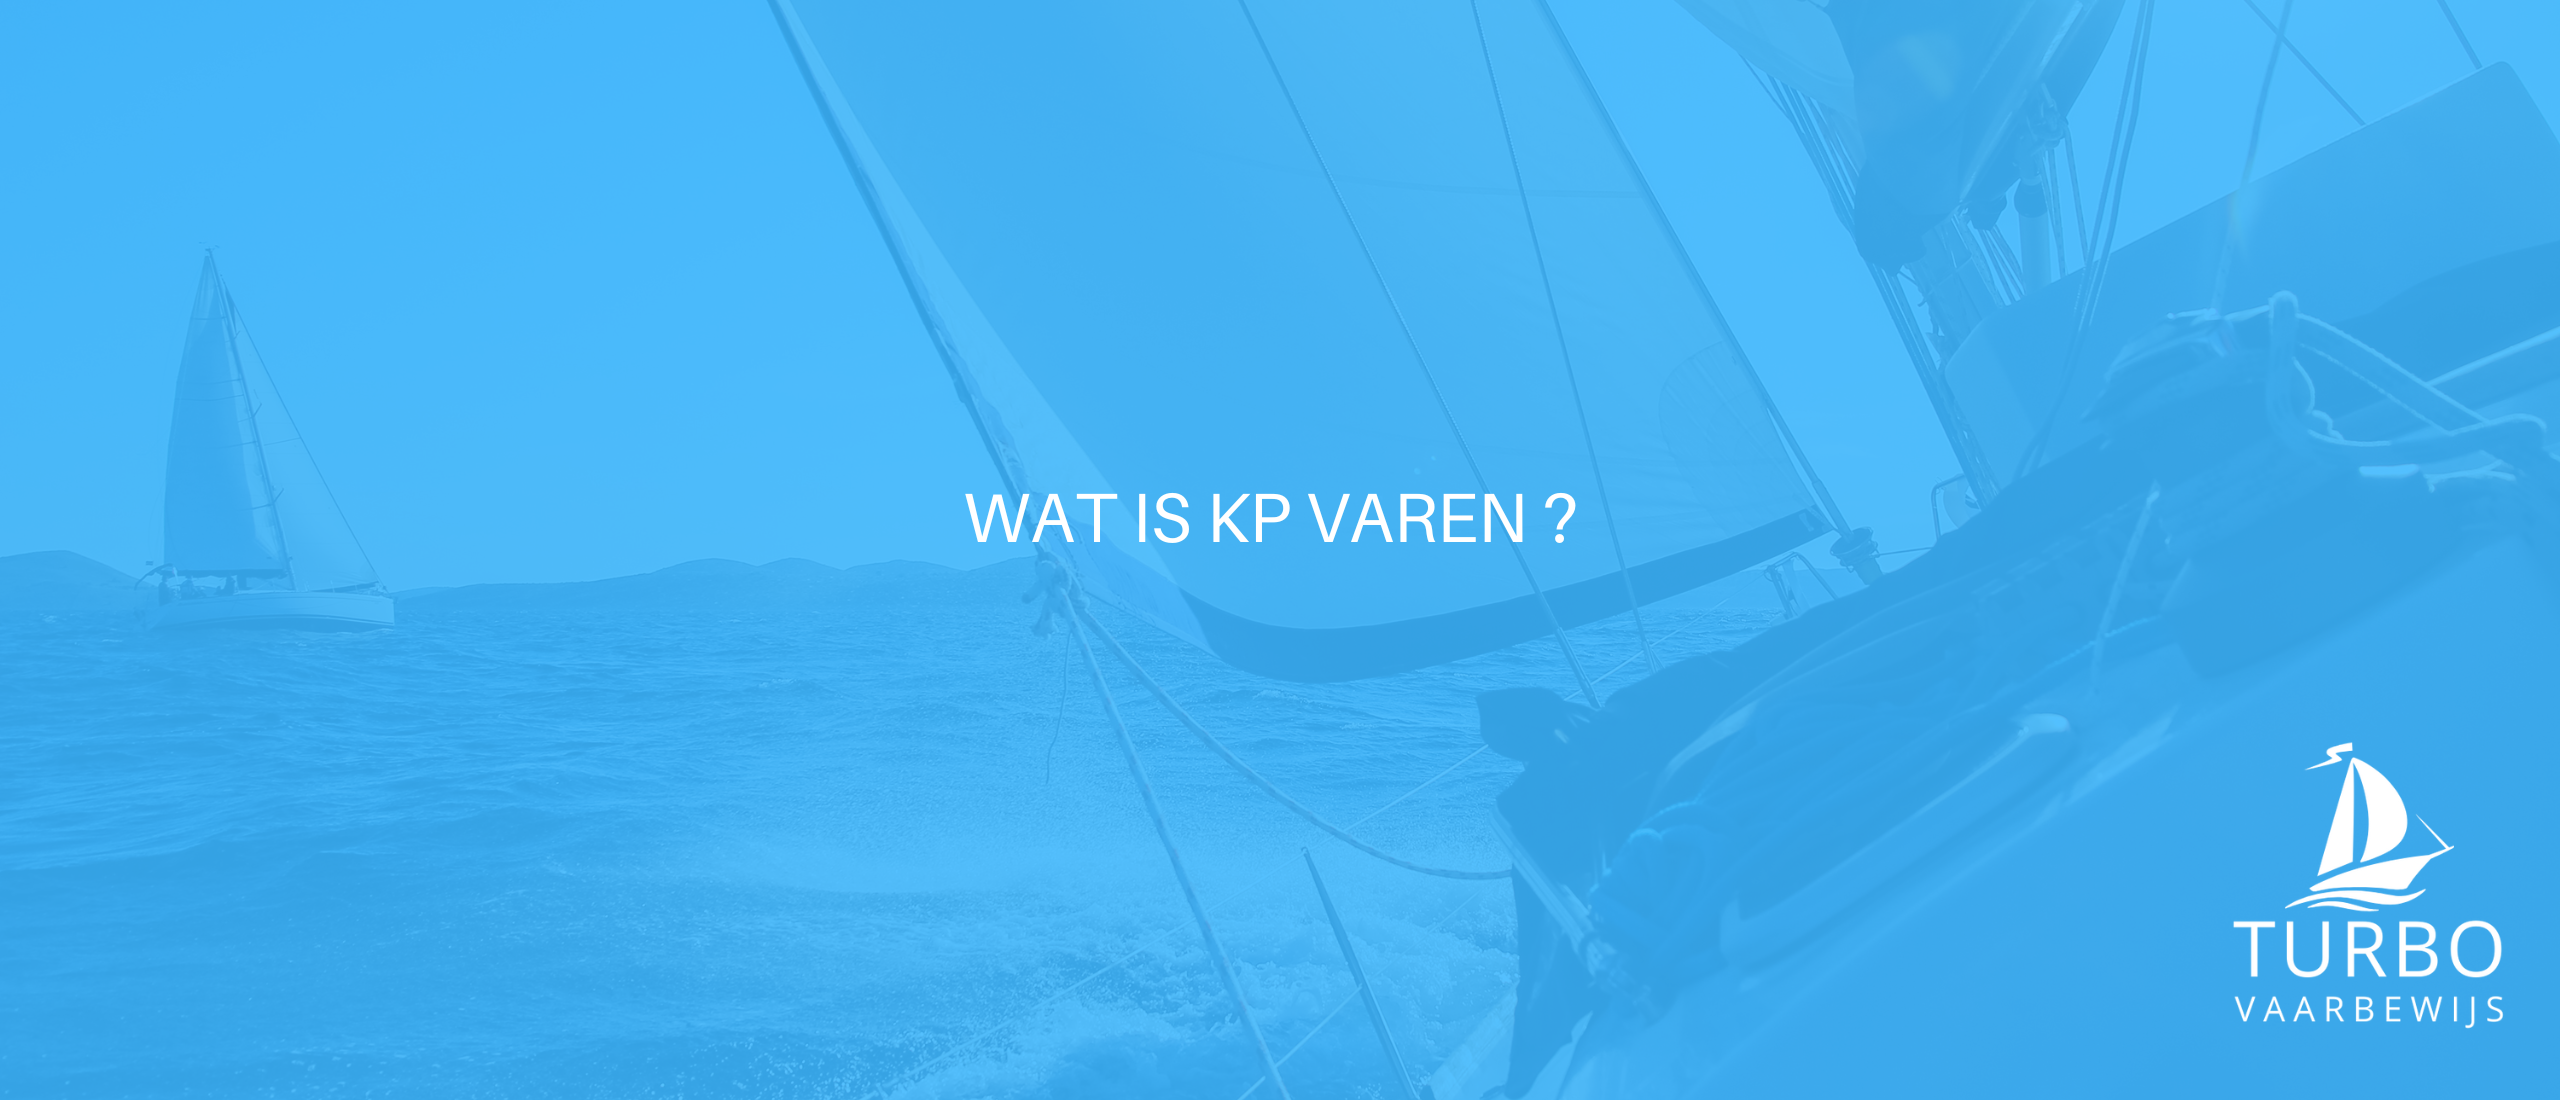 Wat is KP varen?